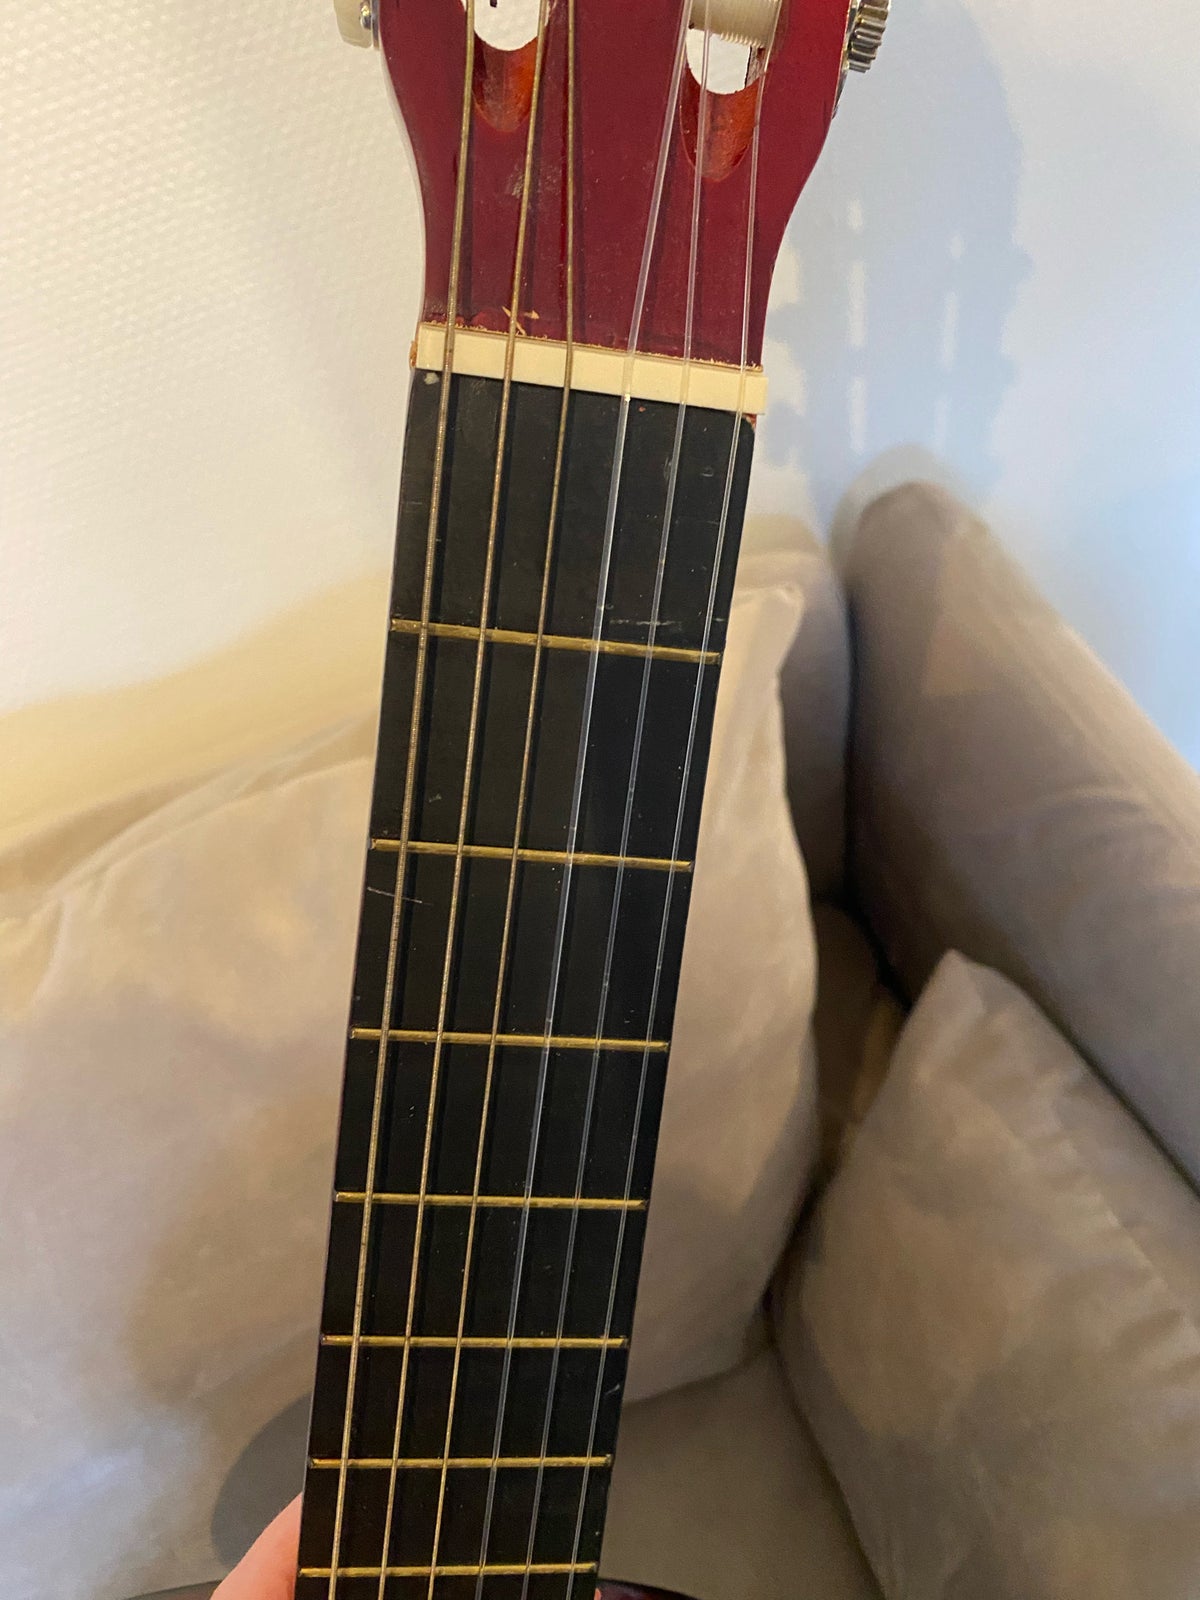 Klassisk, andet mærke Alida Guitar